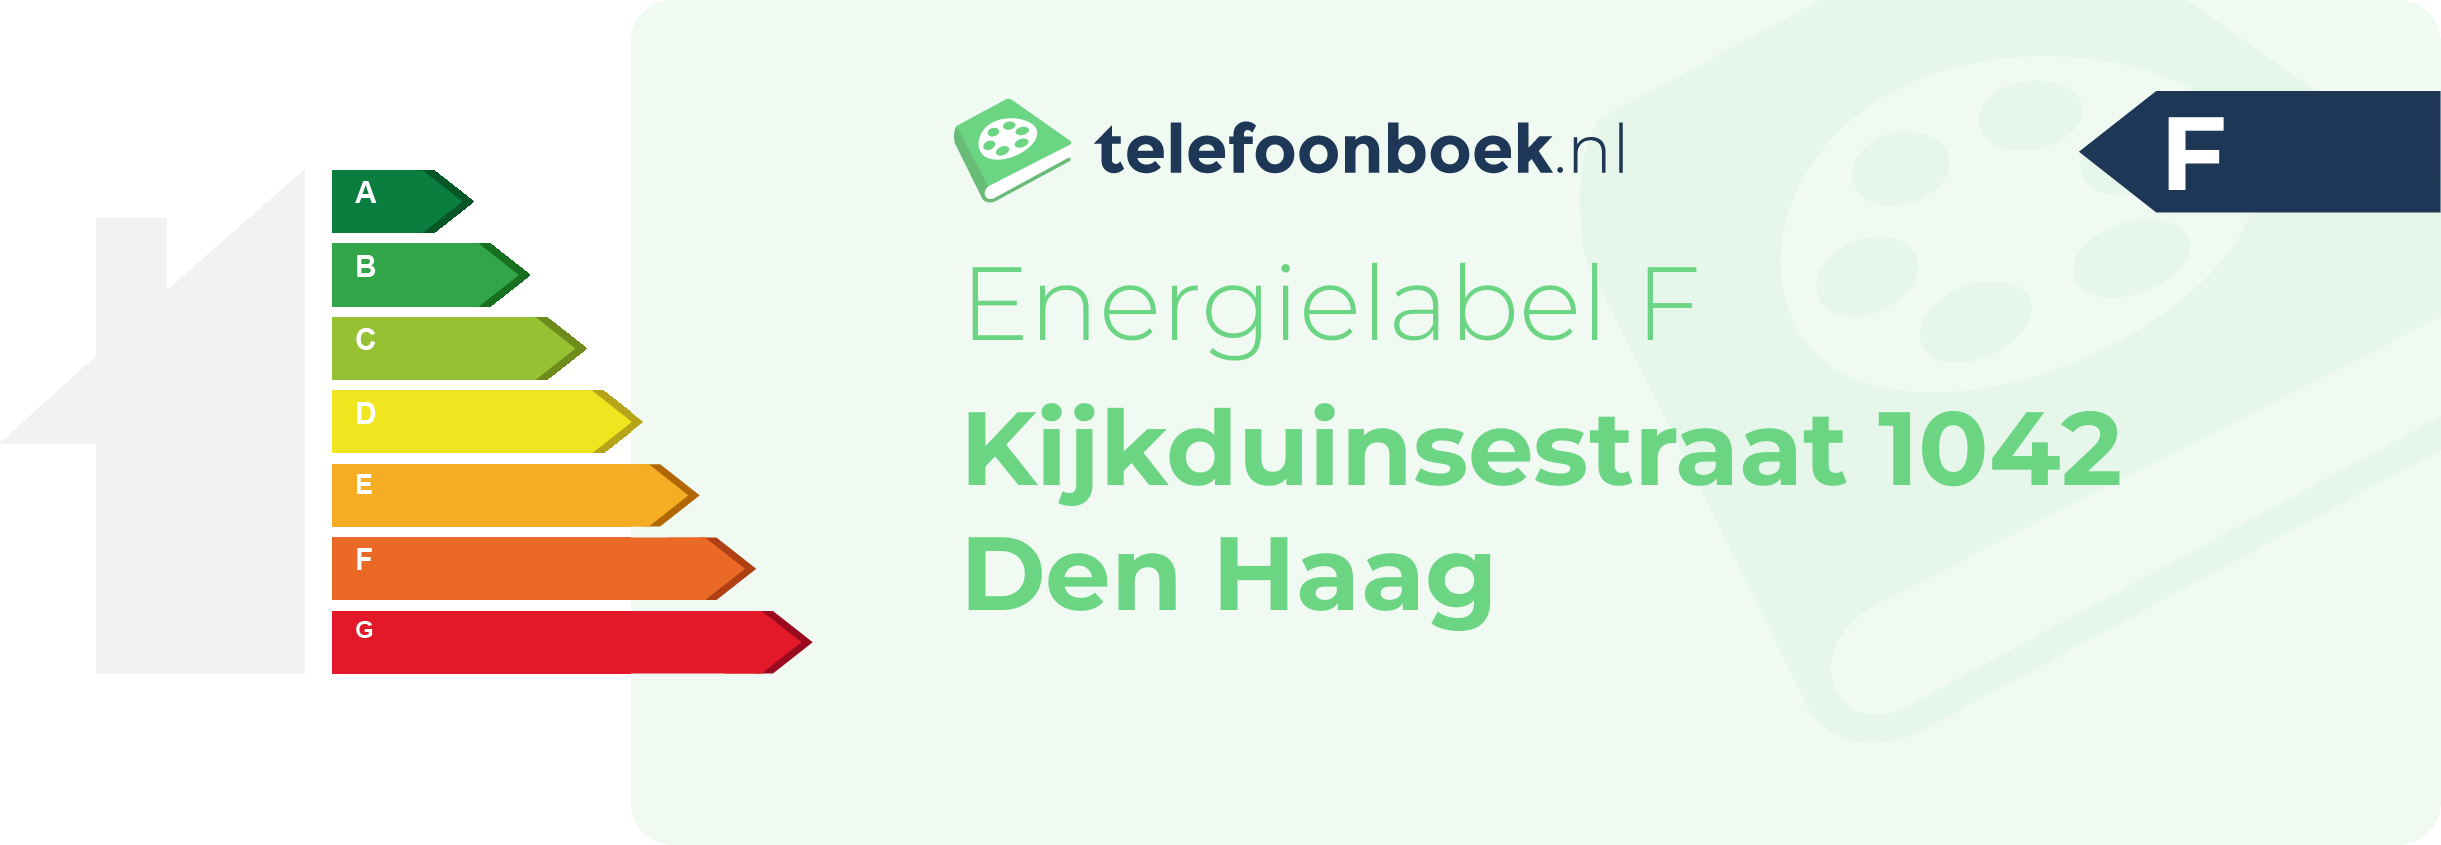 Energielabel Kijkduinsestraat 1042 Den Haag